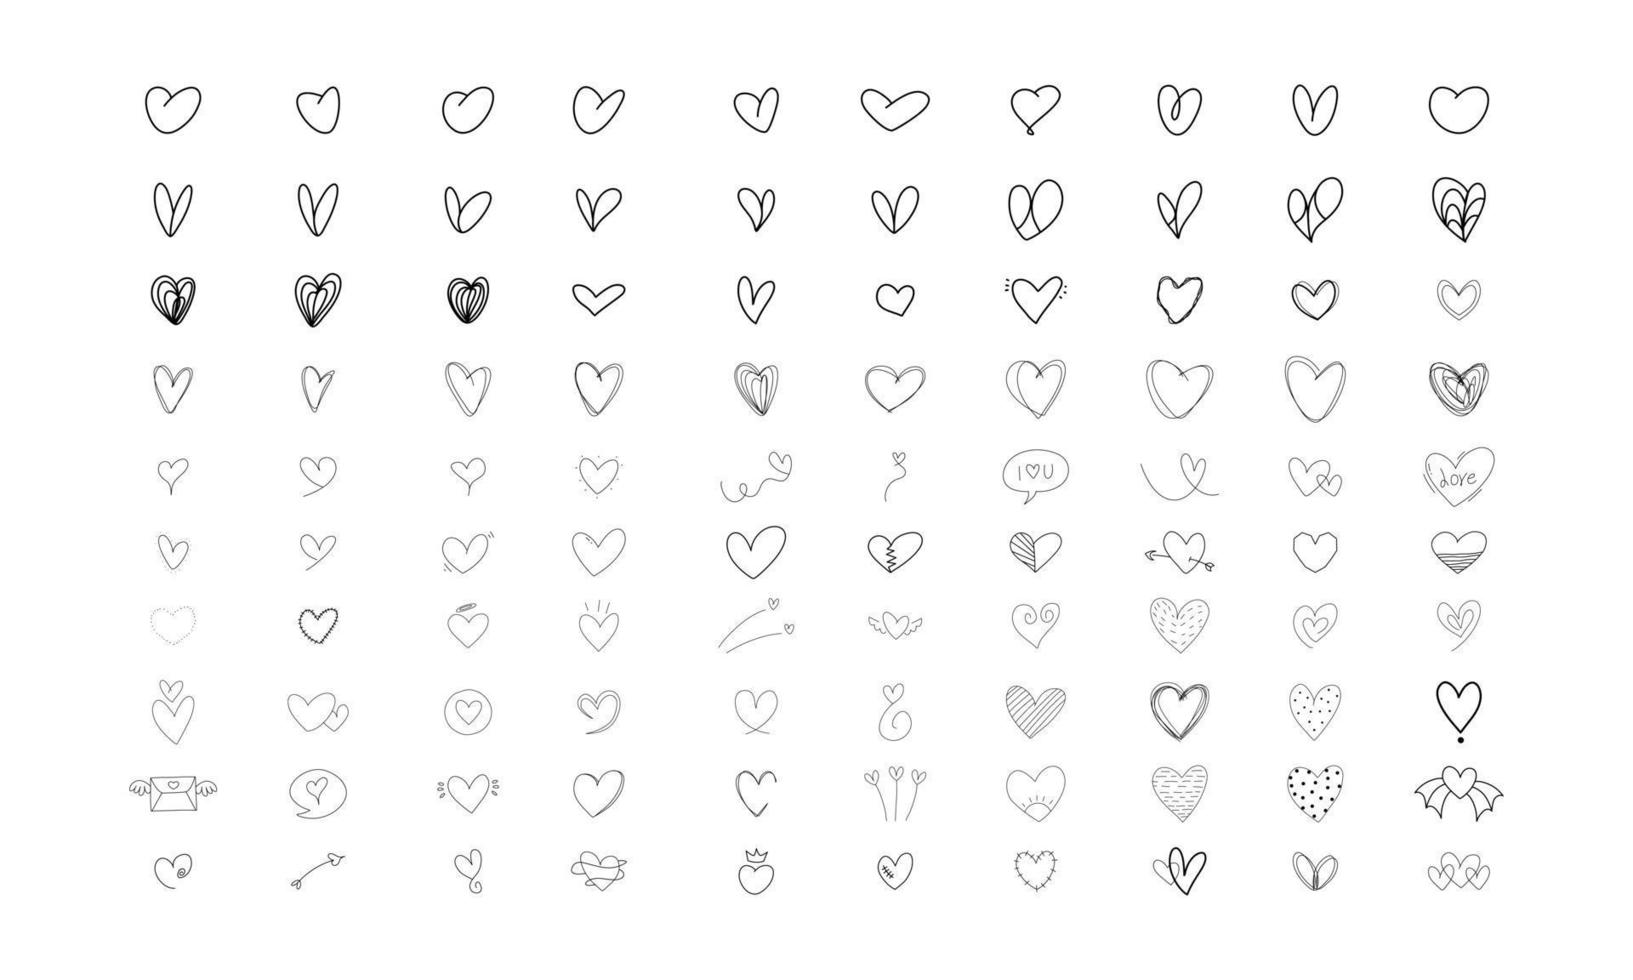 harten doodle op een witte achtergrond. vector handgetekende schets symbolen voor liefde, bruiloft, Valentijnsdag of ander romantisch ontwerp. set van 100 verschillende decoratieve vormen. zwarte doodle illustraties.